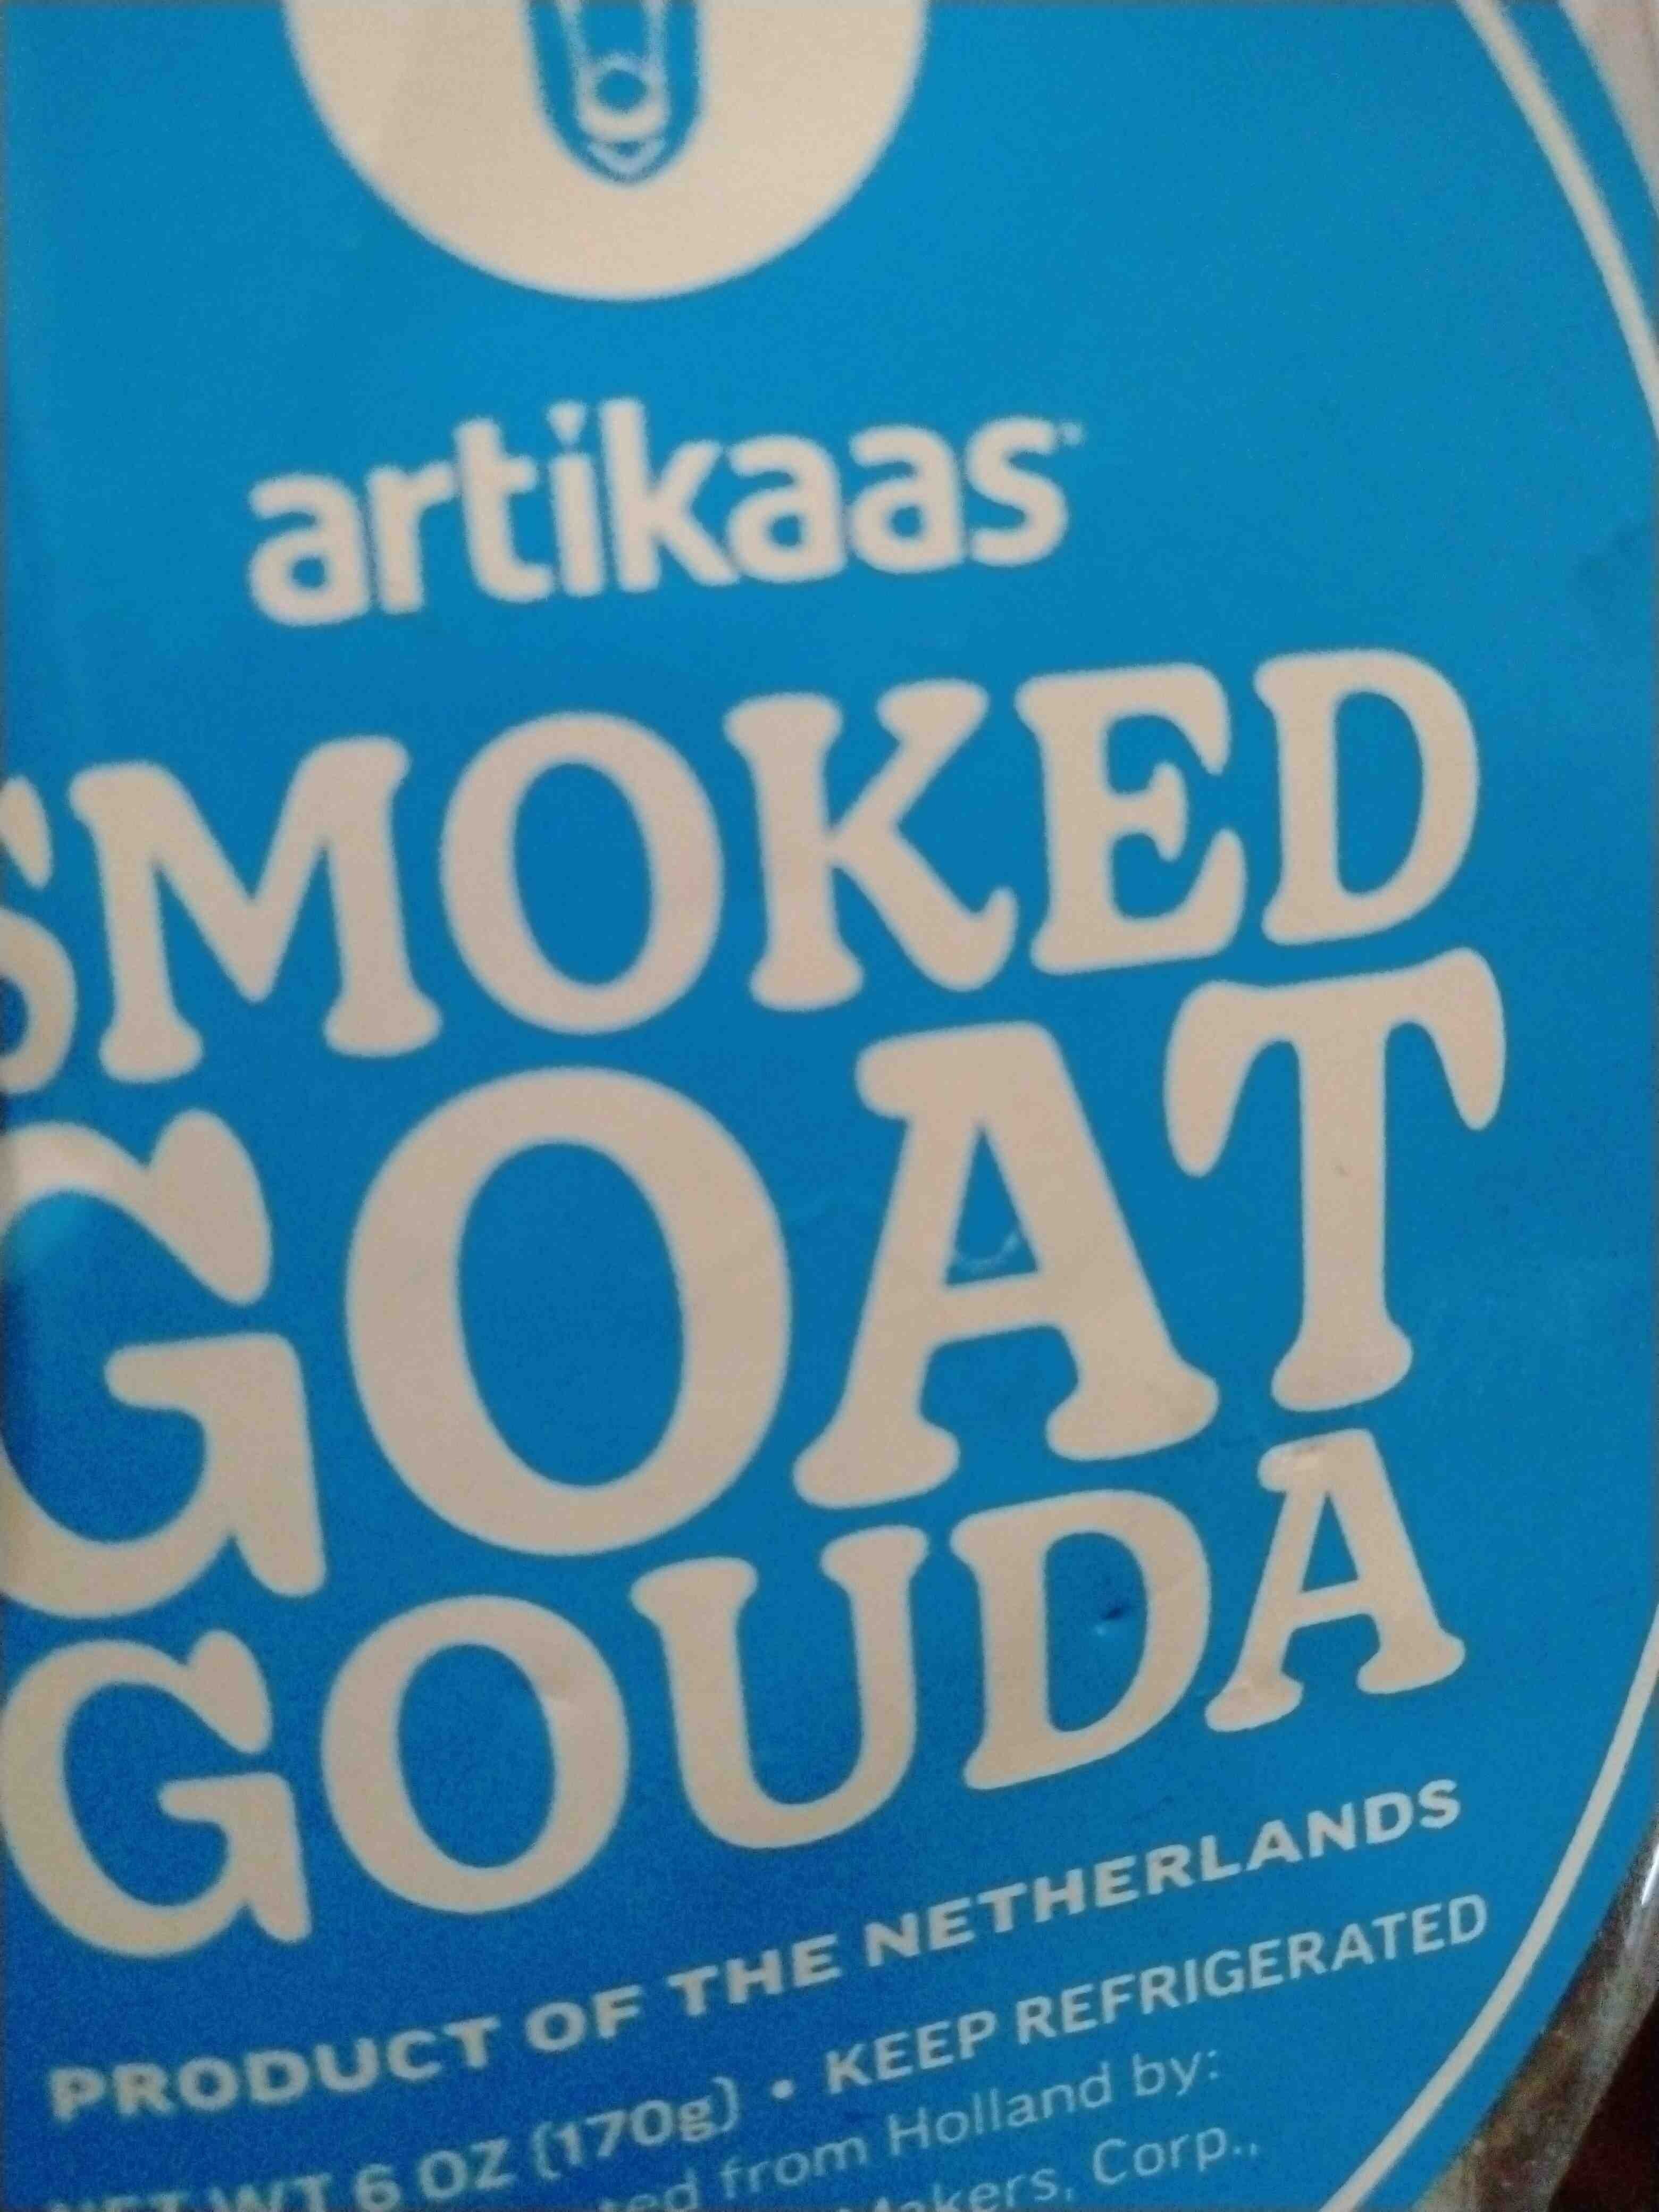 Smoked Goat Gouda - Product - en